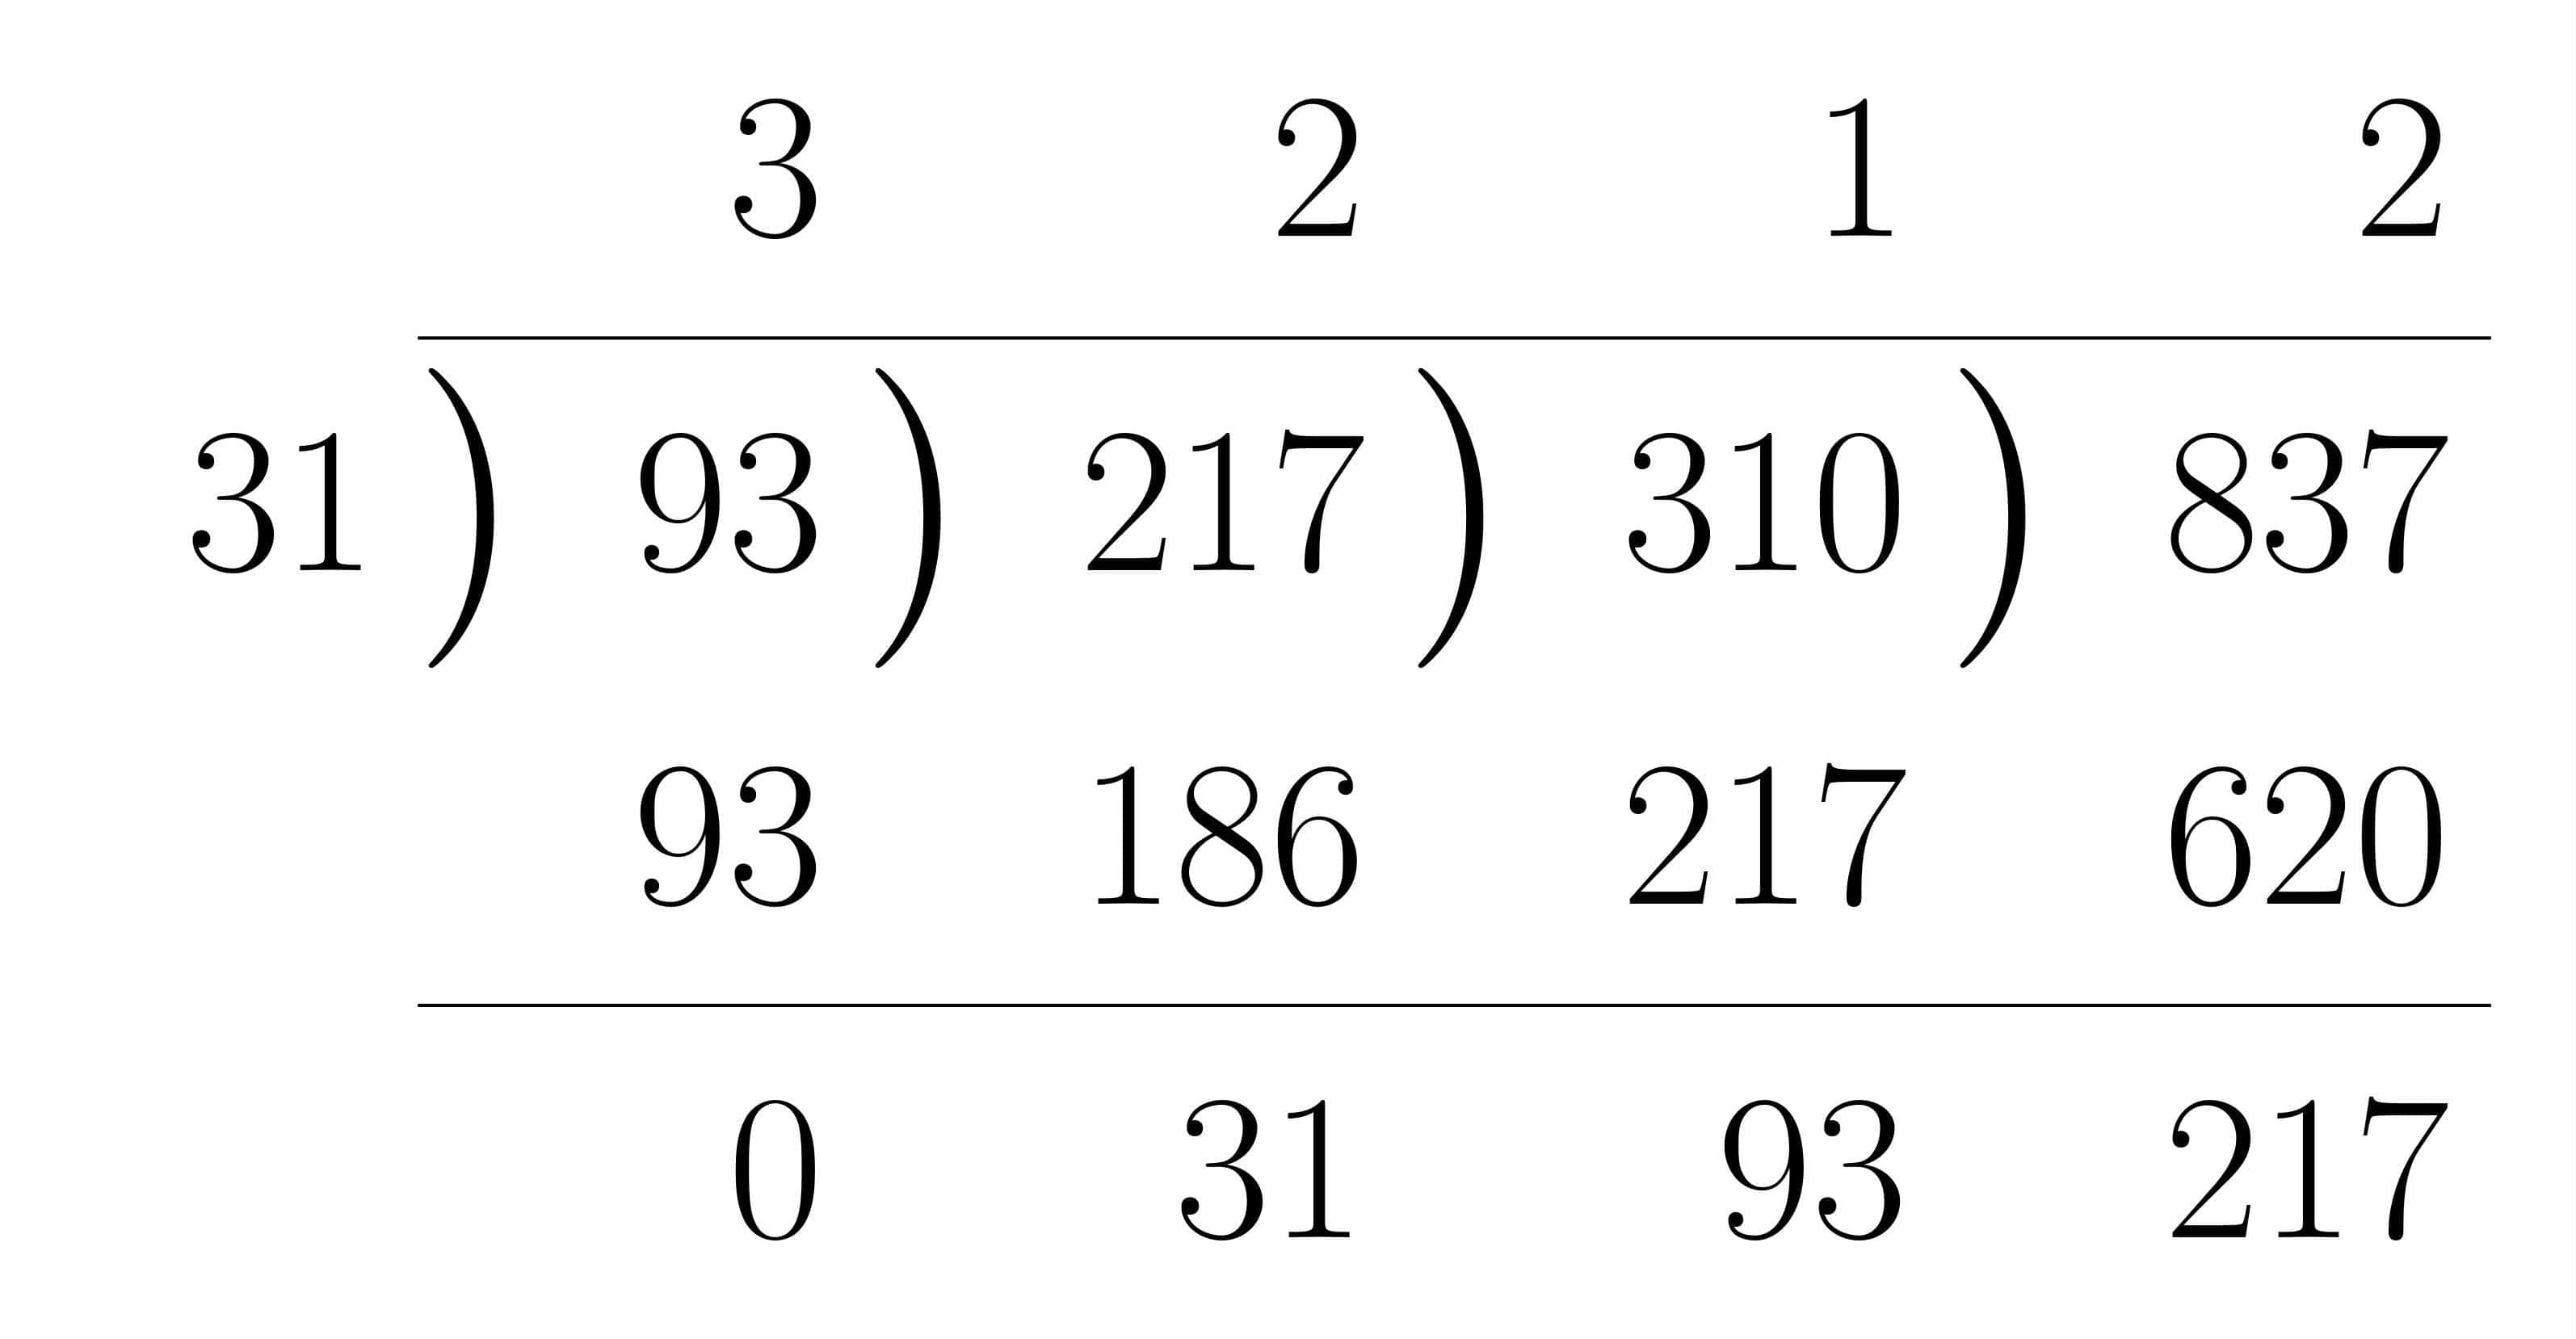 ユークリッドの互除法の計算法練習1